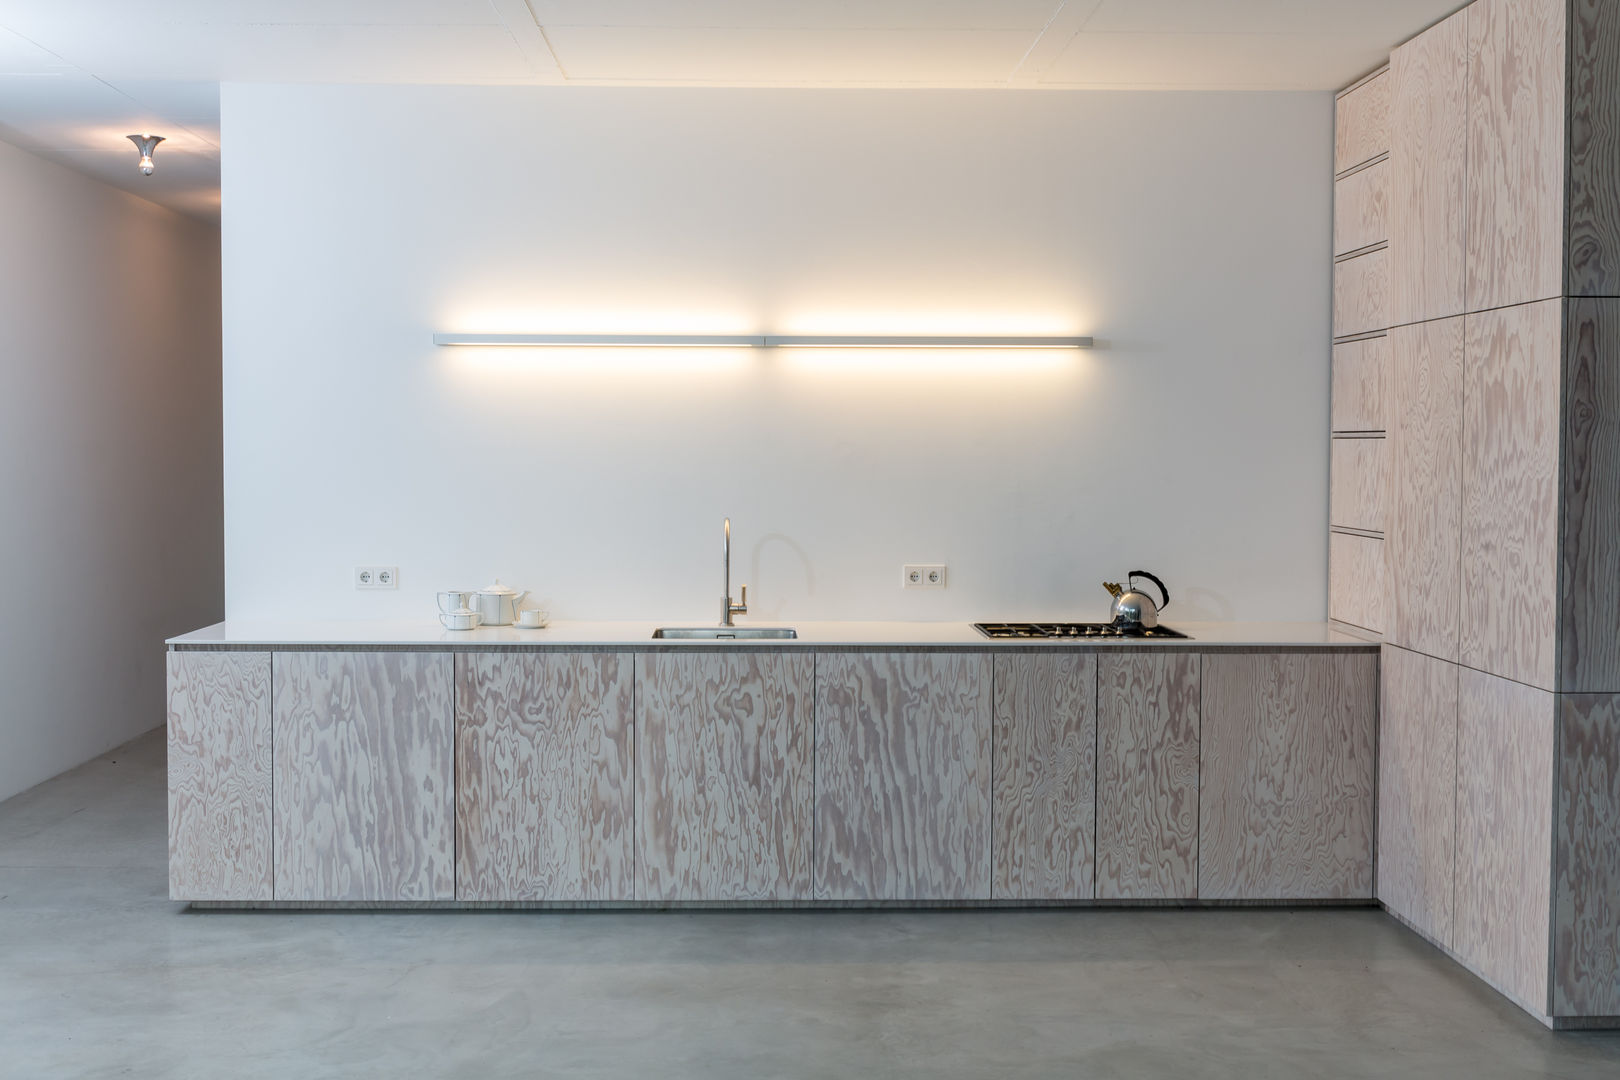 Minimalistische Küche in Seekiefer, DER RAUM DER RAUM Modern kitchen Wood Wood effect